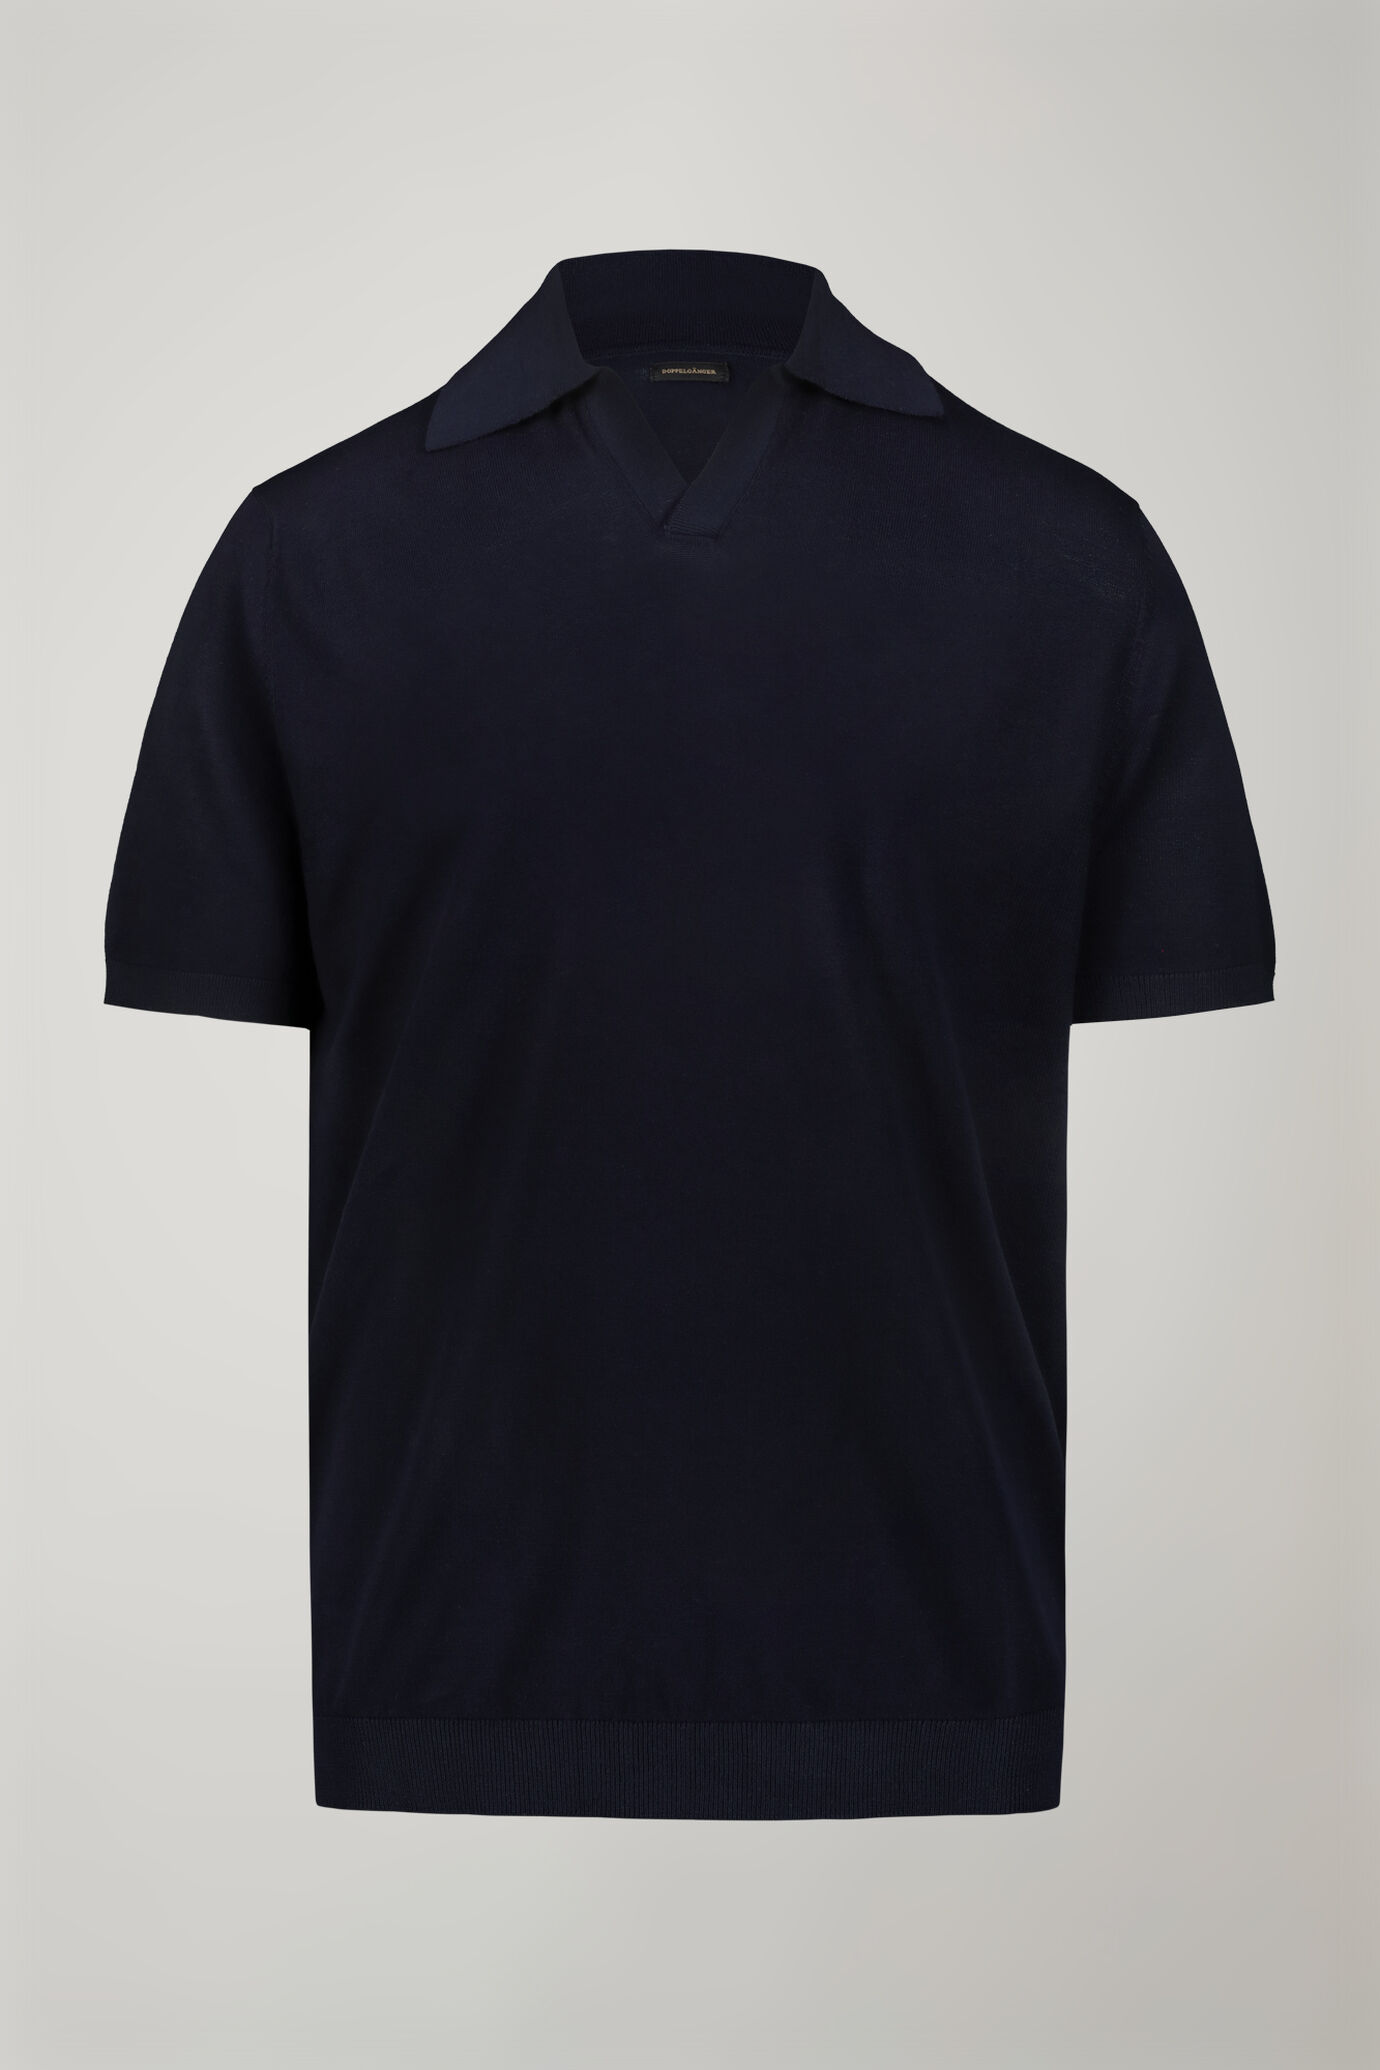 Herren-Poloshirt aus 100 % Baumwolle mit kurzen Ärmeln und Derbykragen in normaler Passform image number 4